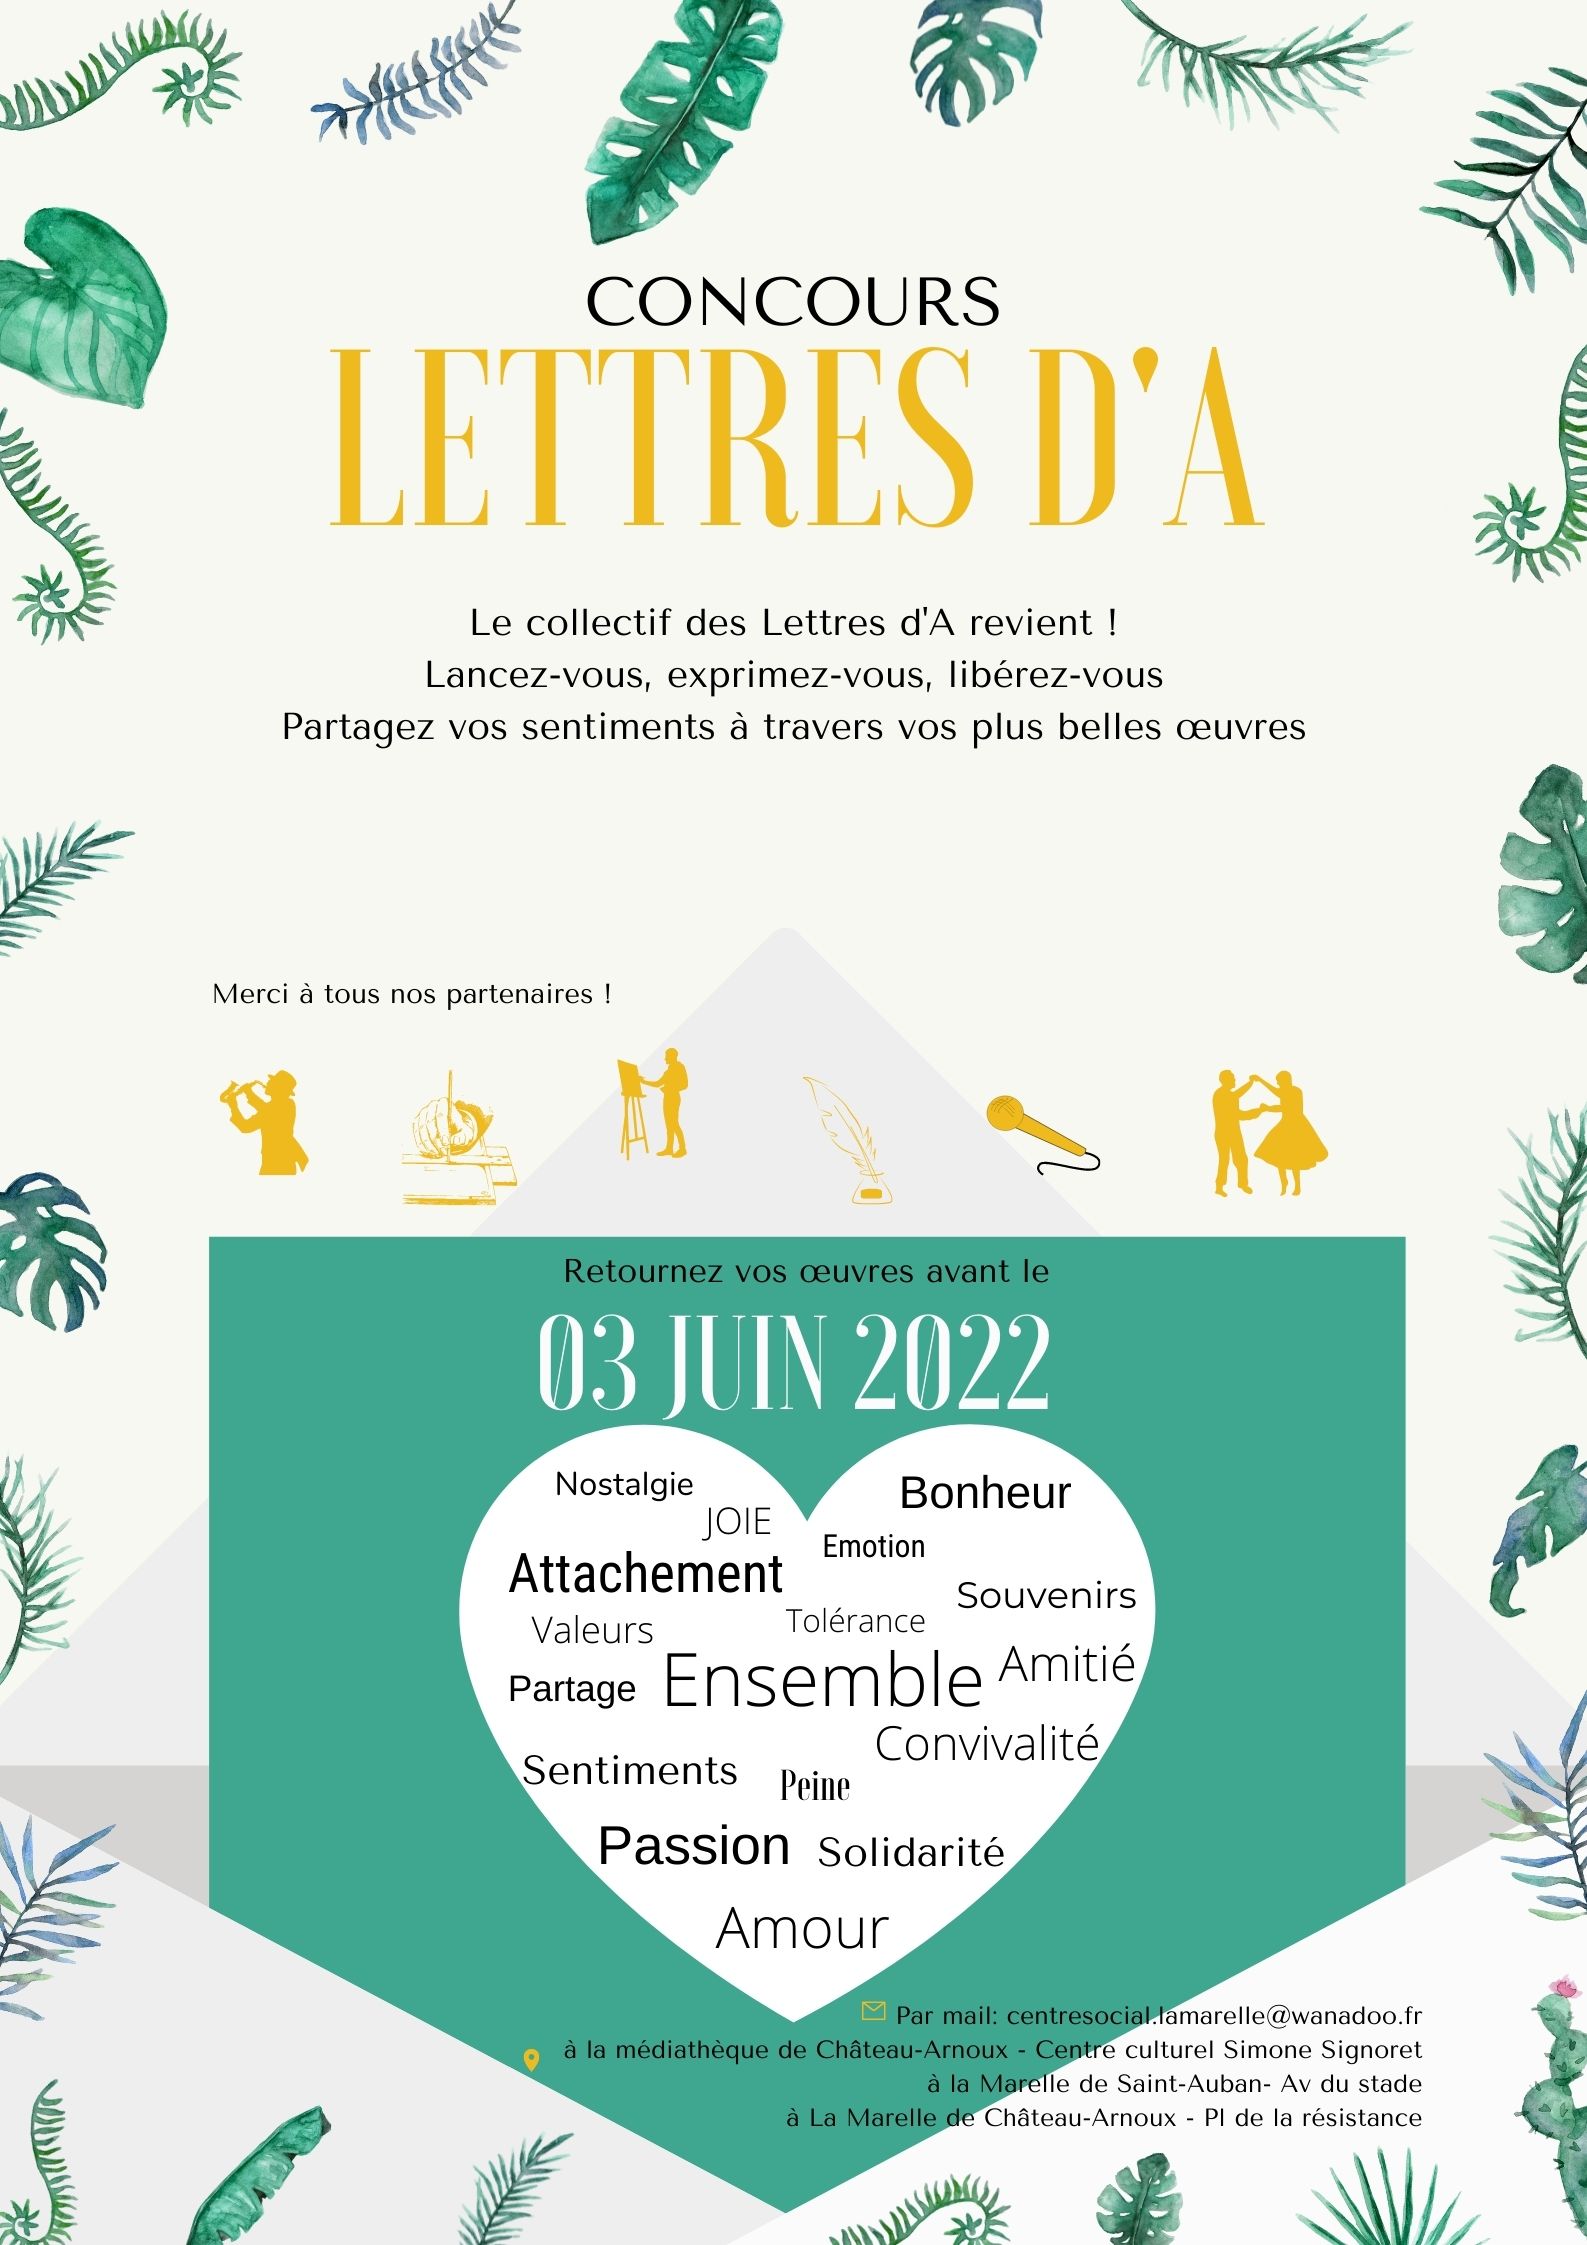 Concours Lettres d'A 2022